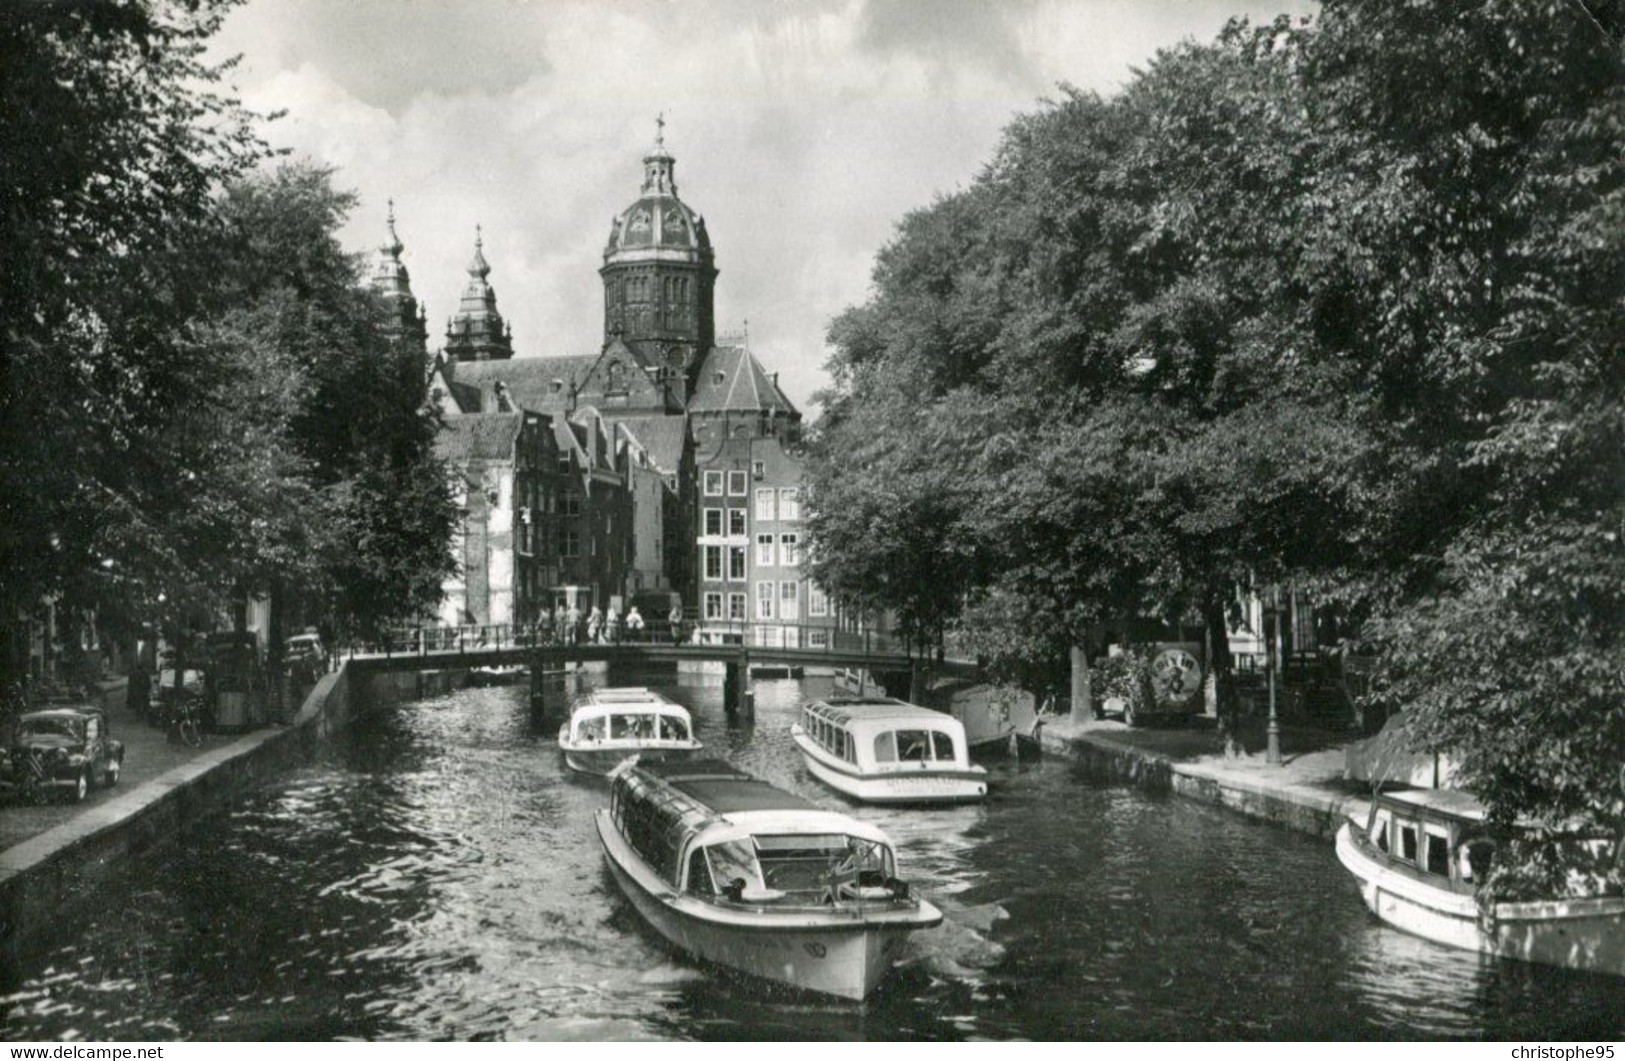 Pays Bas .n° 24887. Oud Amsterdam . Voorburgwal. Vue Generale/ Cpsm . - Amsterdam